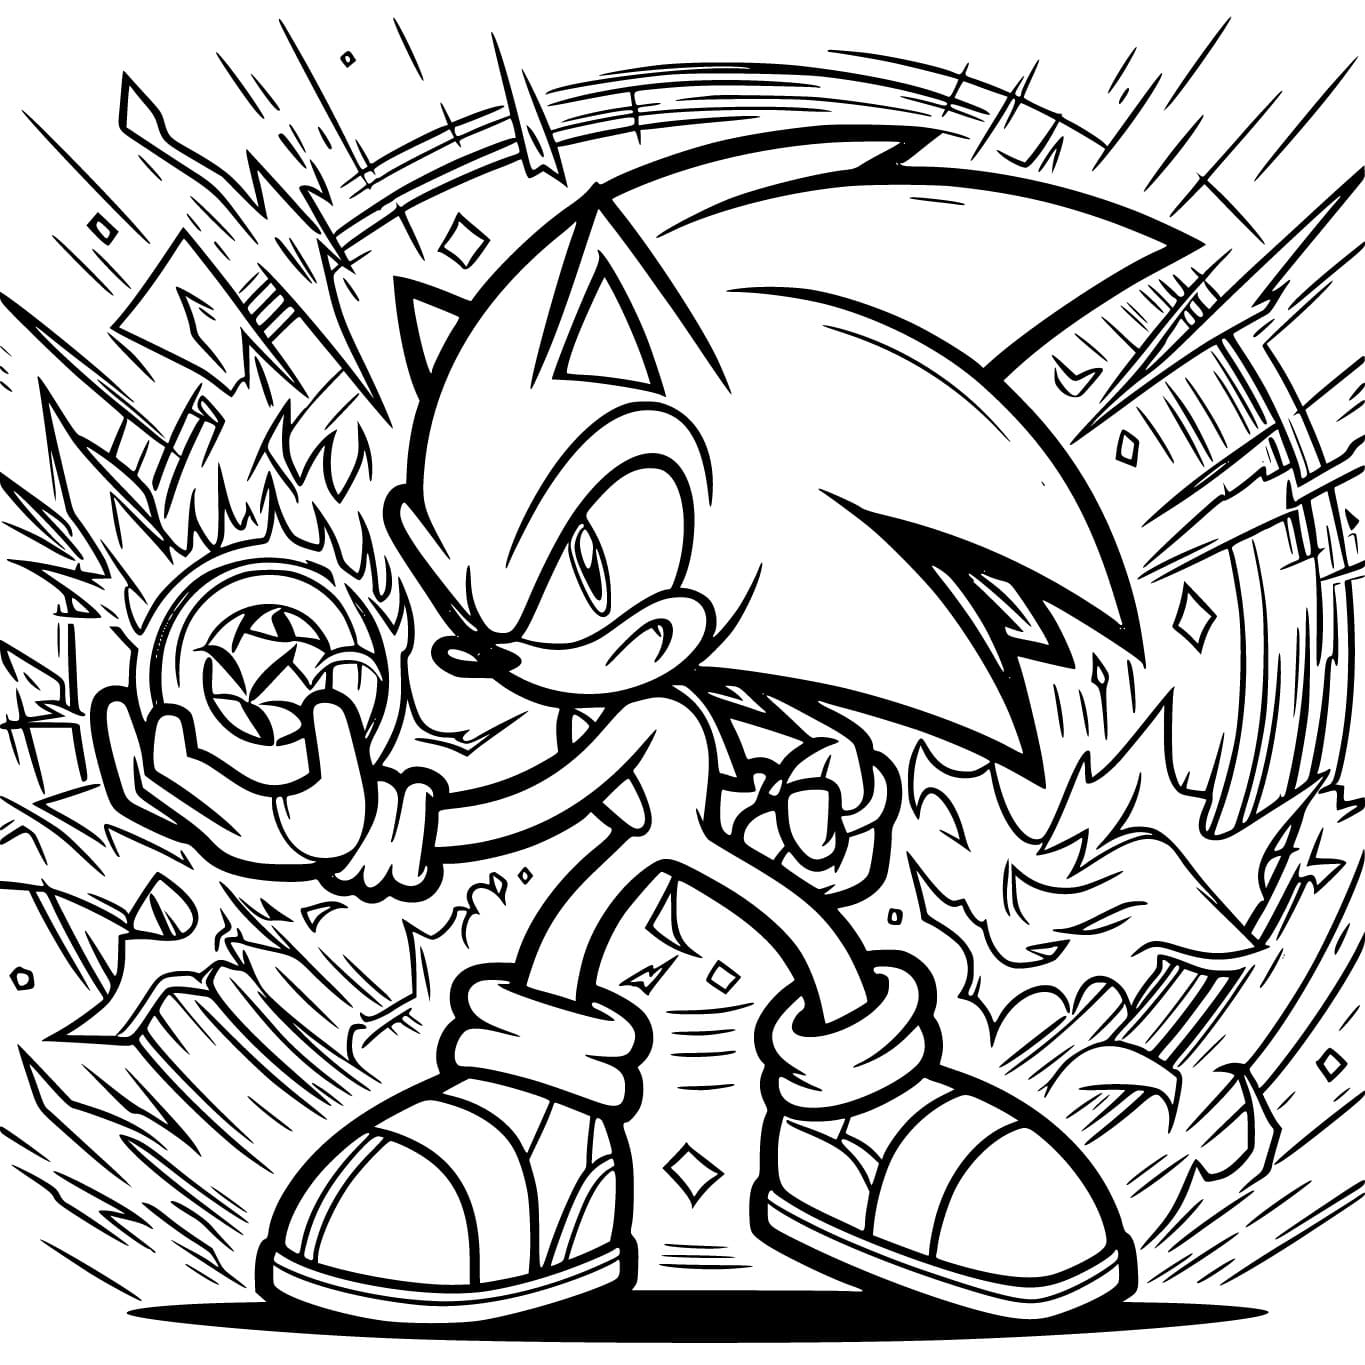 Coloriage Sonic est Puissant